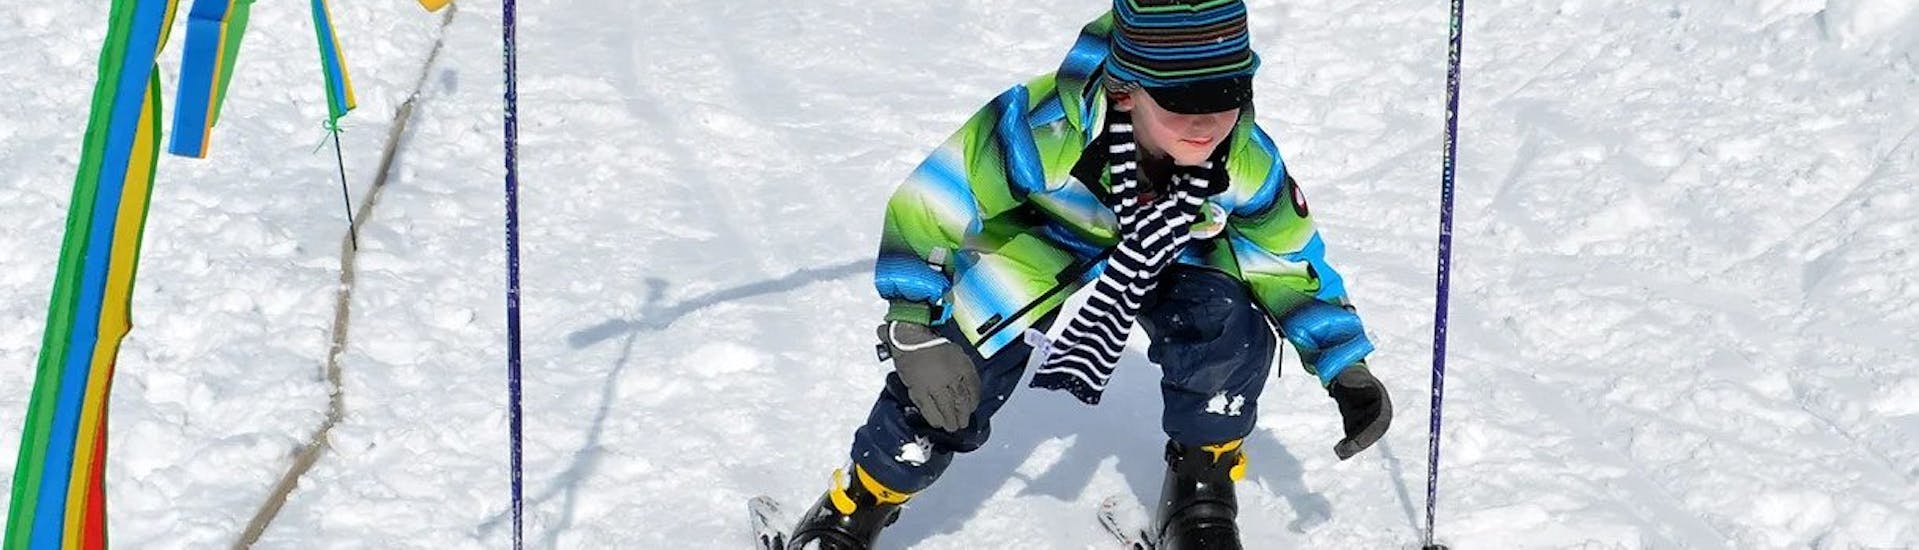 Privé skilessen voor kinderen (vanaf 3 jaar) van alle niveaus.